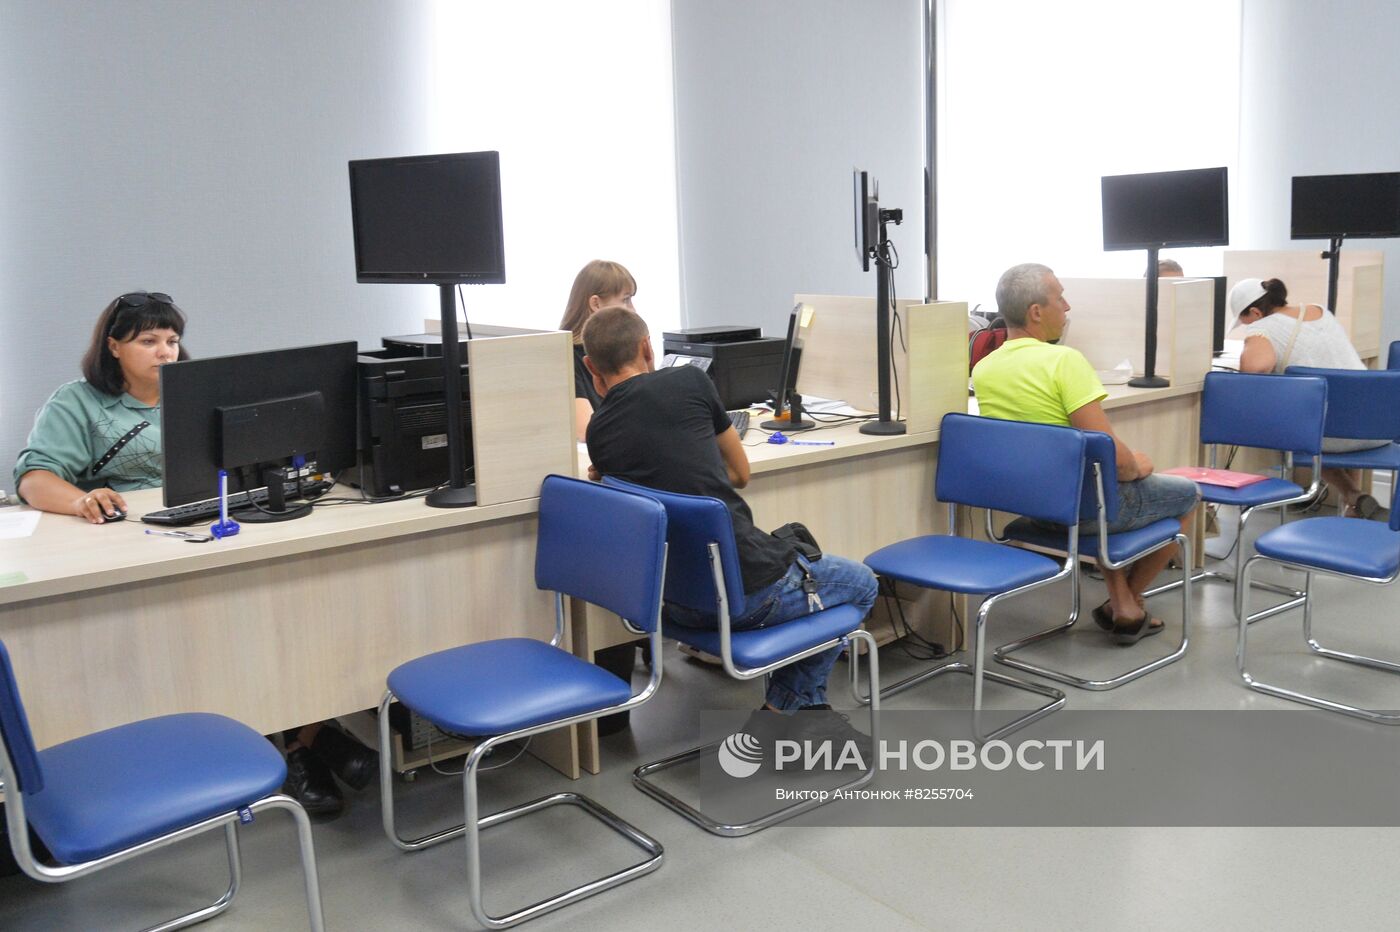 Пункт приема документов на гражданство РФ и выдача сим карт в Харьковской области